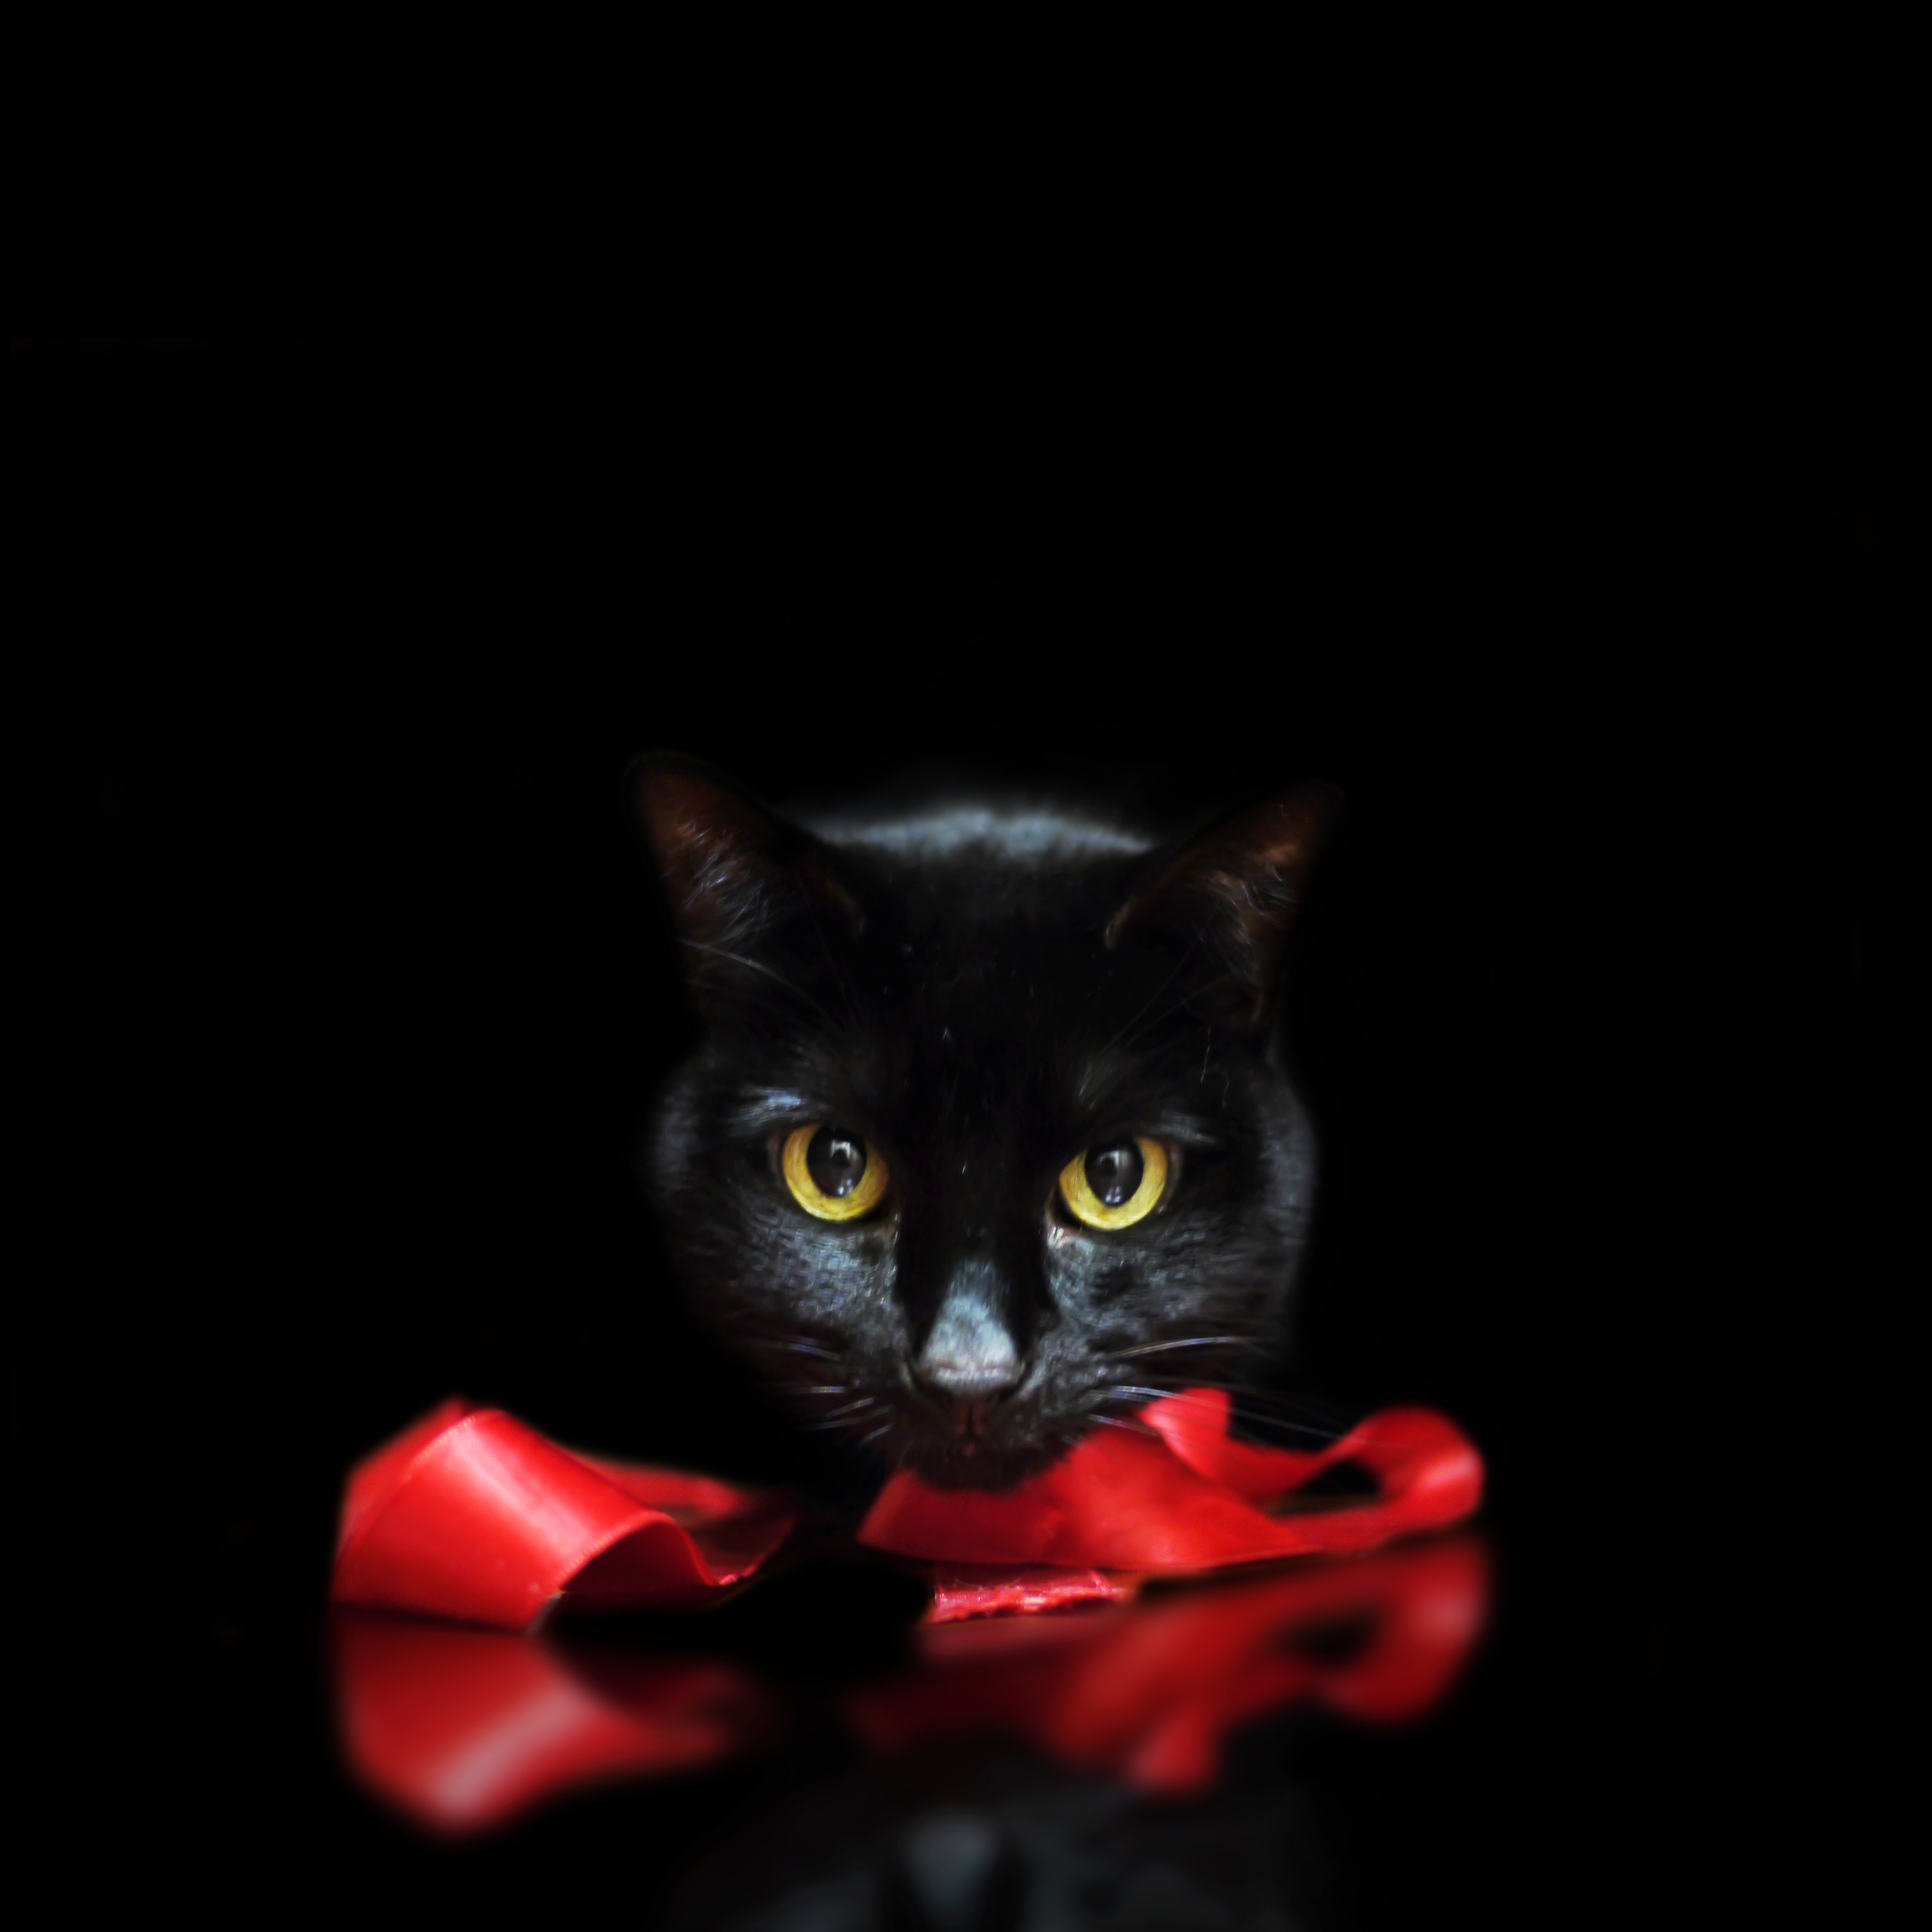 フリー画像 動物写真 哺乳類 ネコ科 猫 ネコ 黒猫 黒色 ブラック フリー素材 画像素材なら 無料 フリー写真素材のフリーフォト